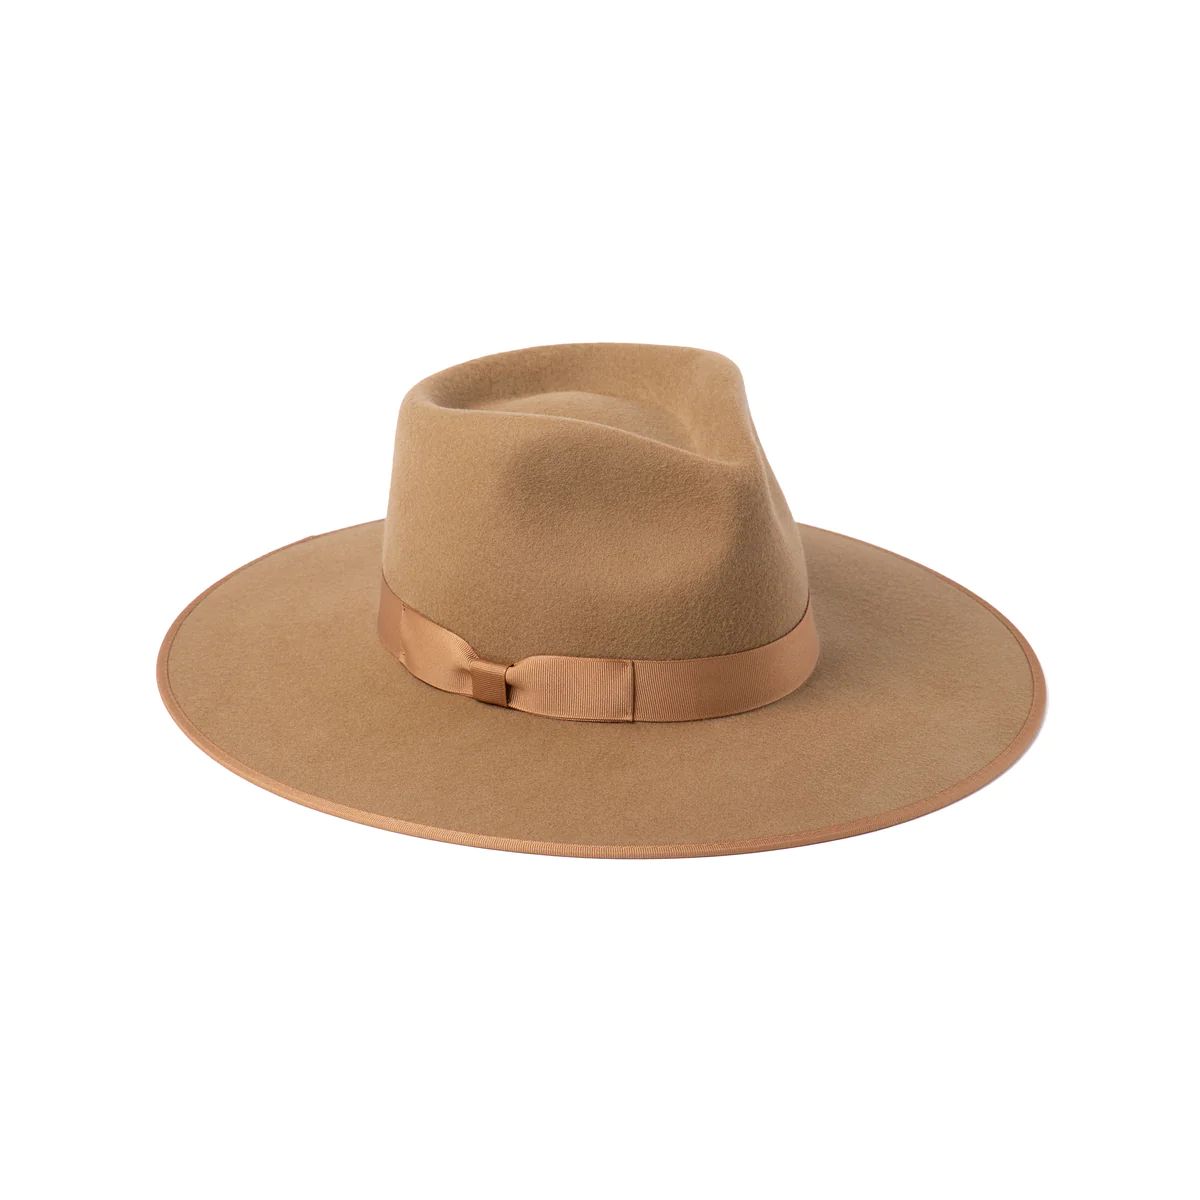 Teak Rancher Wool Felt Fedora Hat in Brown - Lack of Color US | Lack of Color